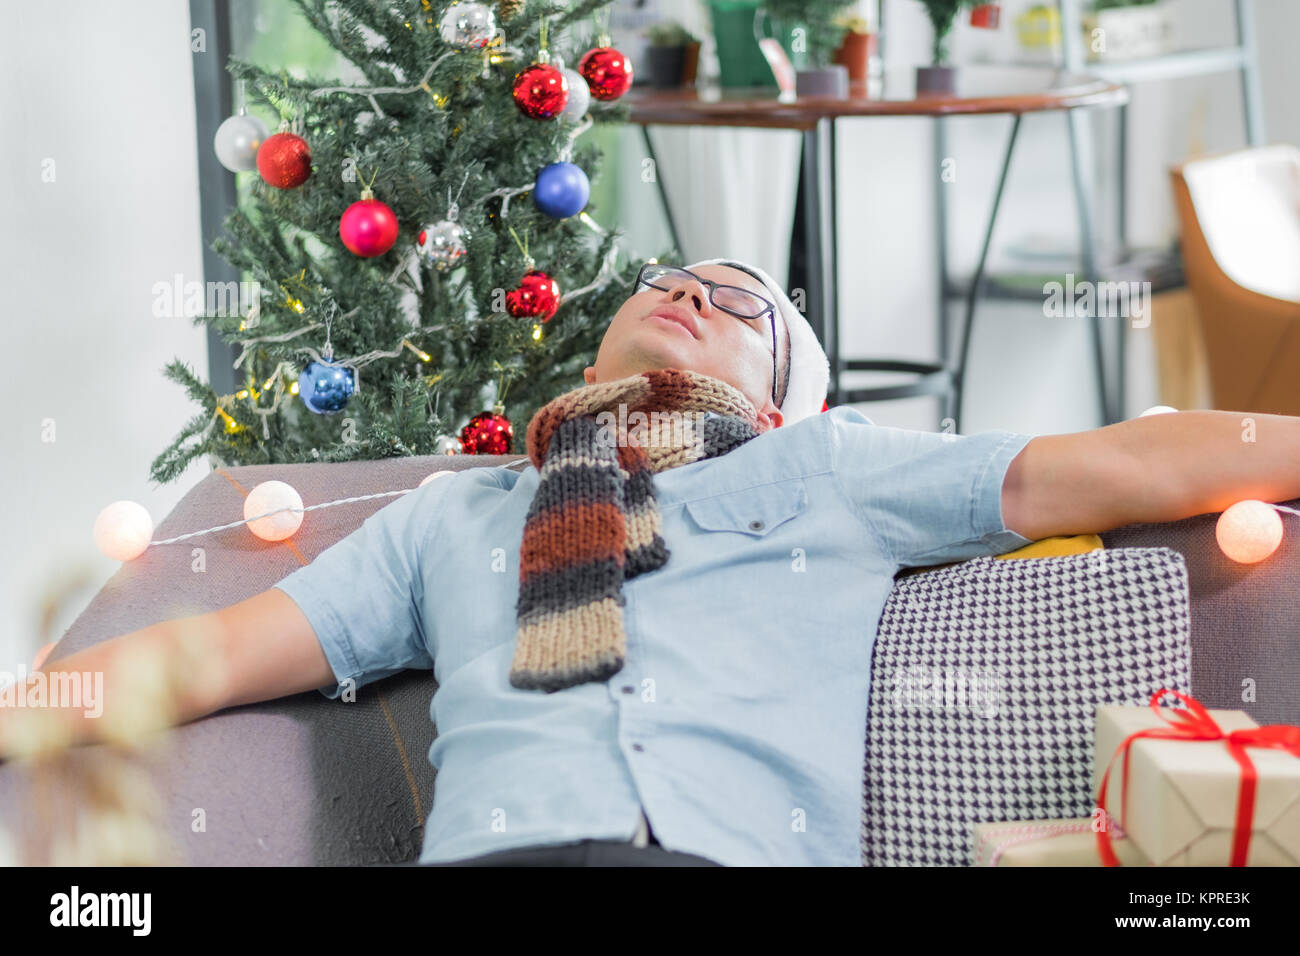 Asien mann Kater und ging schlafen auf dem Sofa nach schweren Weihnachten und Neues Jahr Partei beenden und auf der Couch bis zum Morgen feiern Feiertag sogar Stockfoto